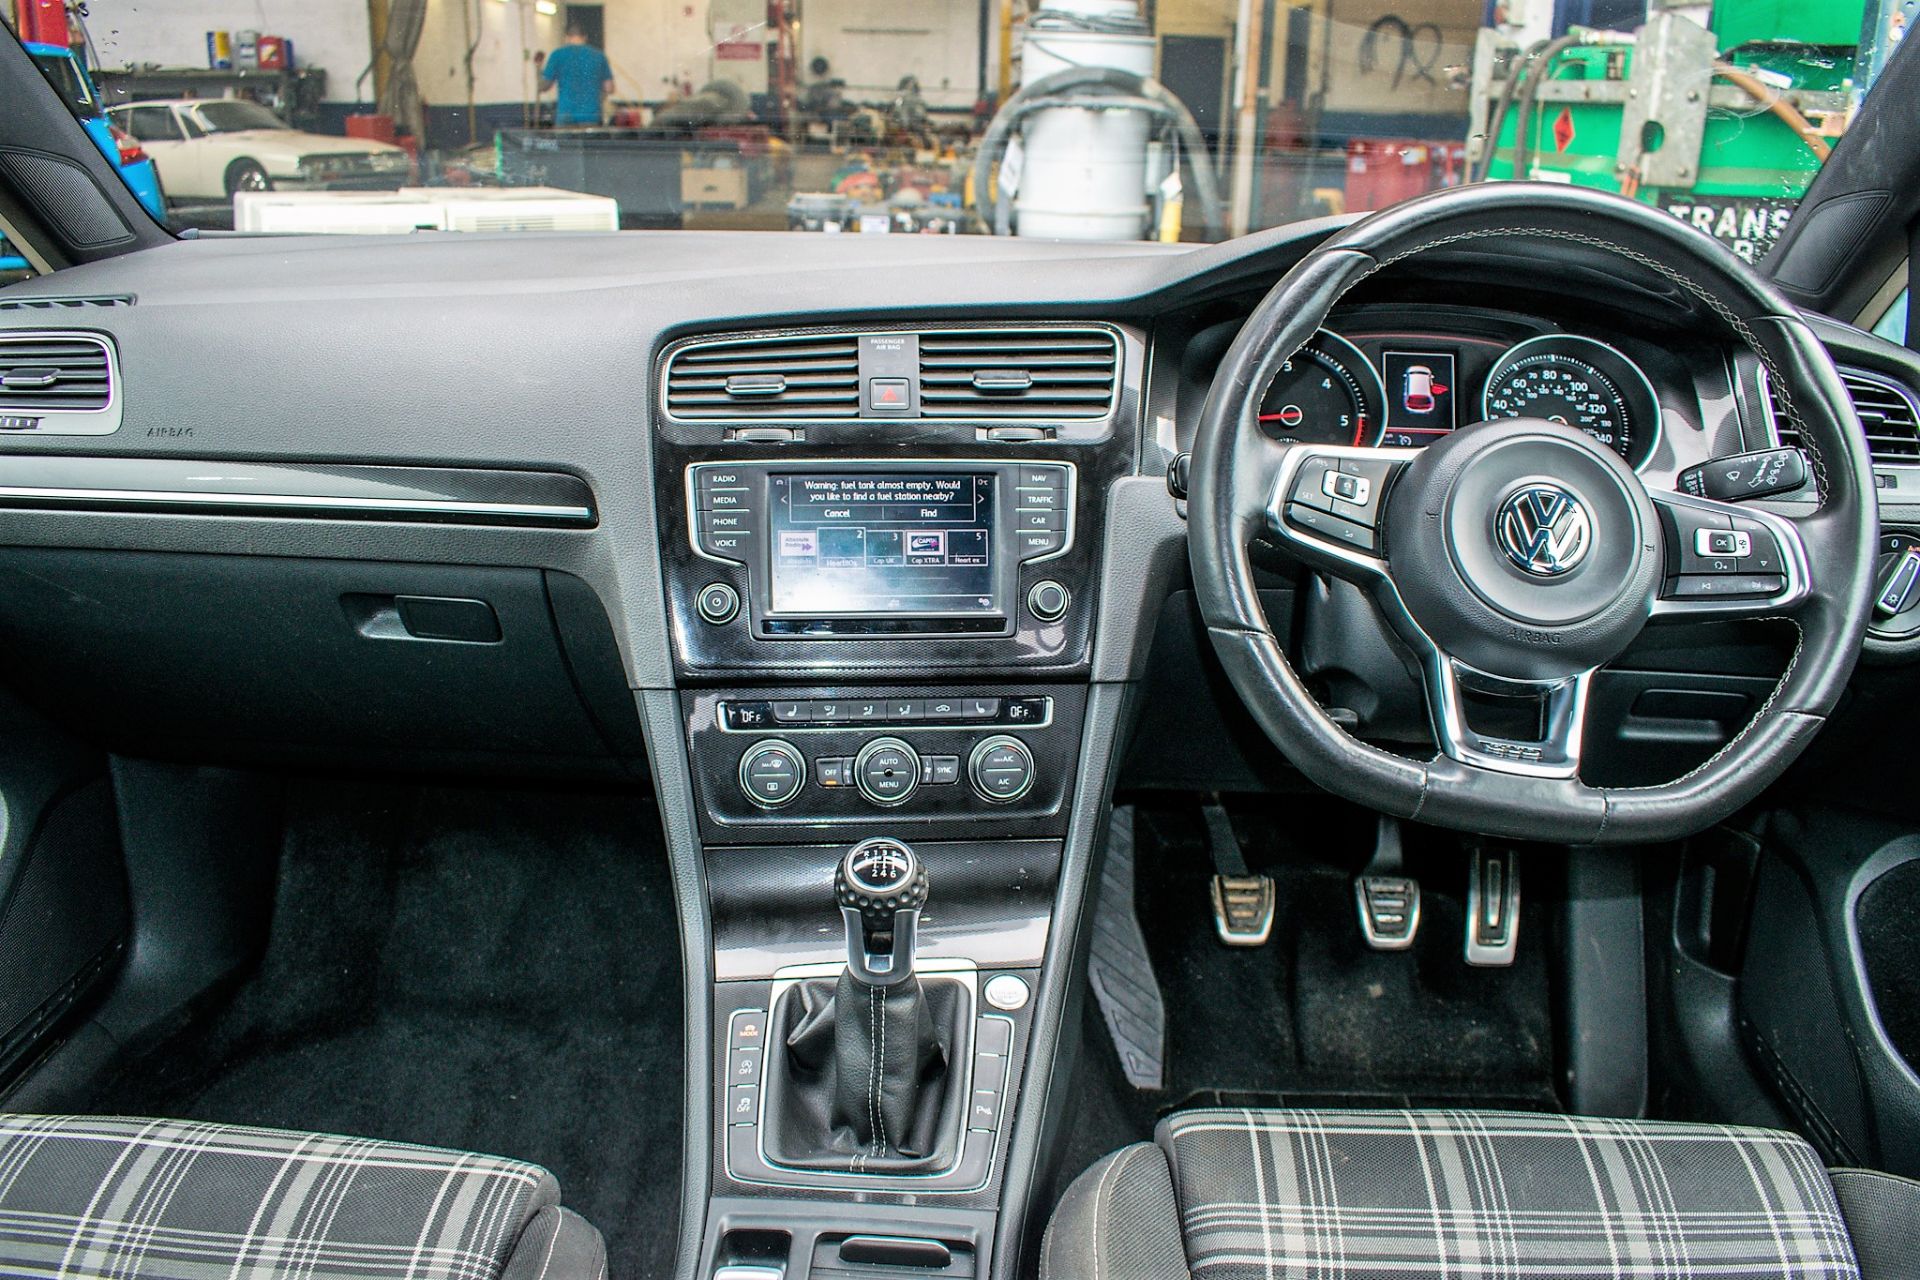 Volkswagen Golf GTD 2.0 5 door hatchback car Registration Number: VE66 DMY Date of Registration: - Image 11 of 13